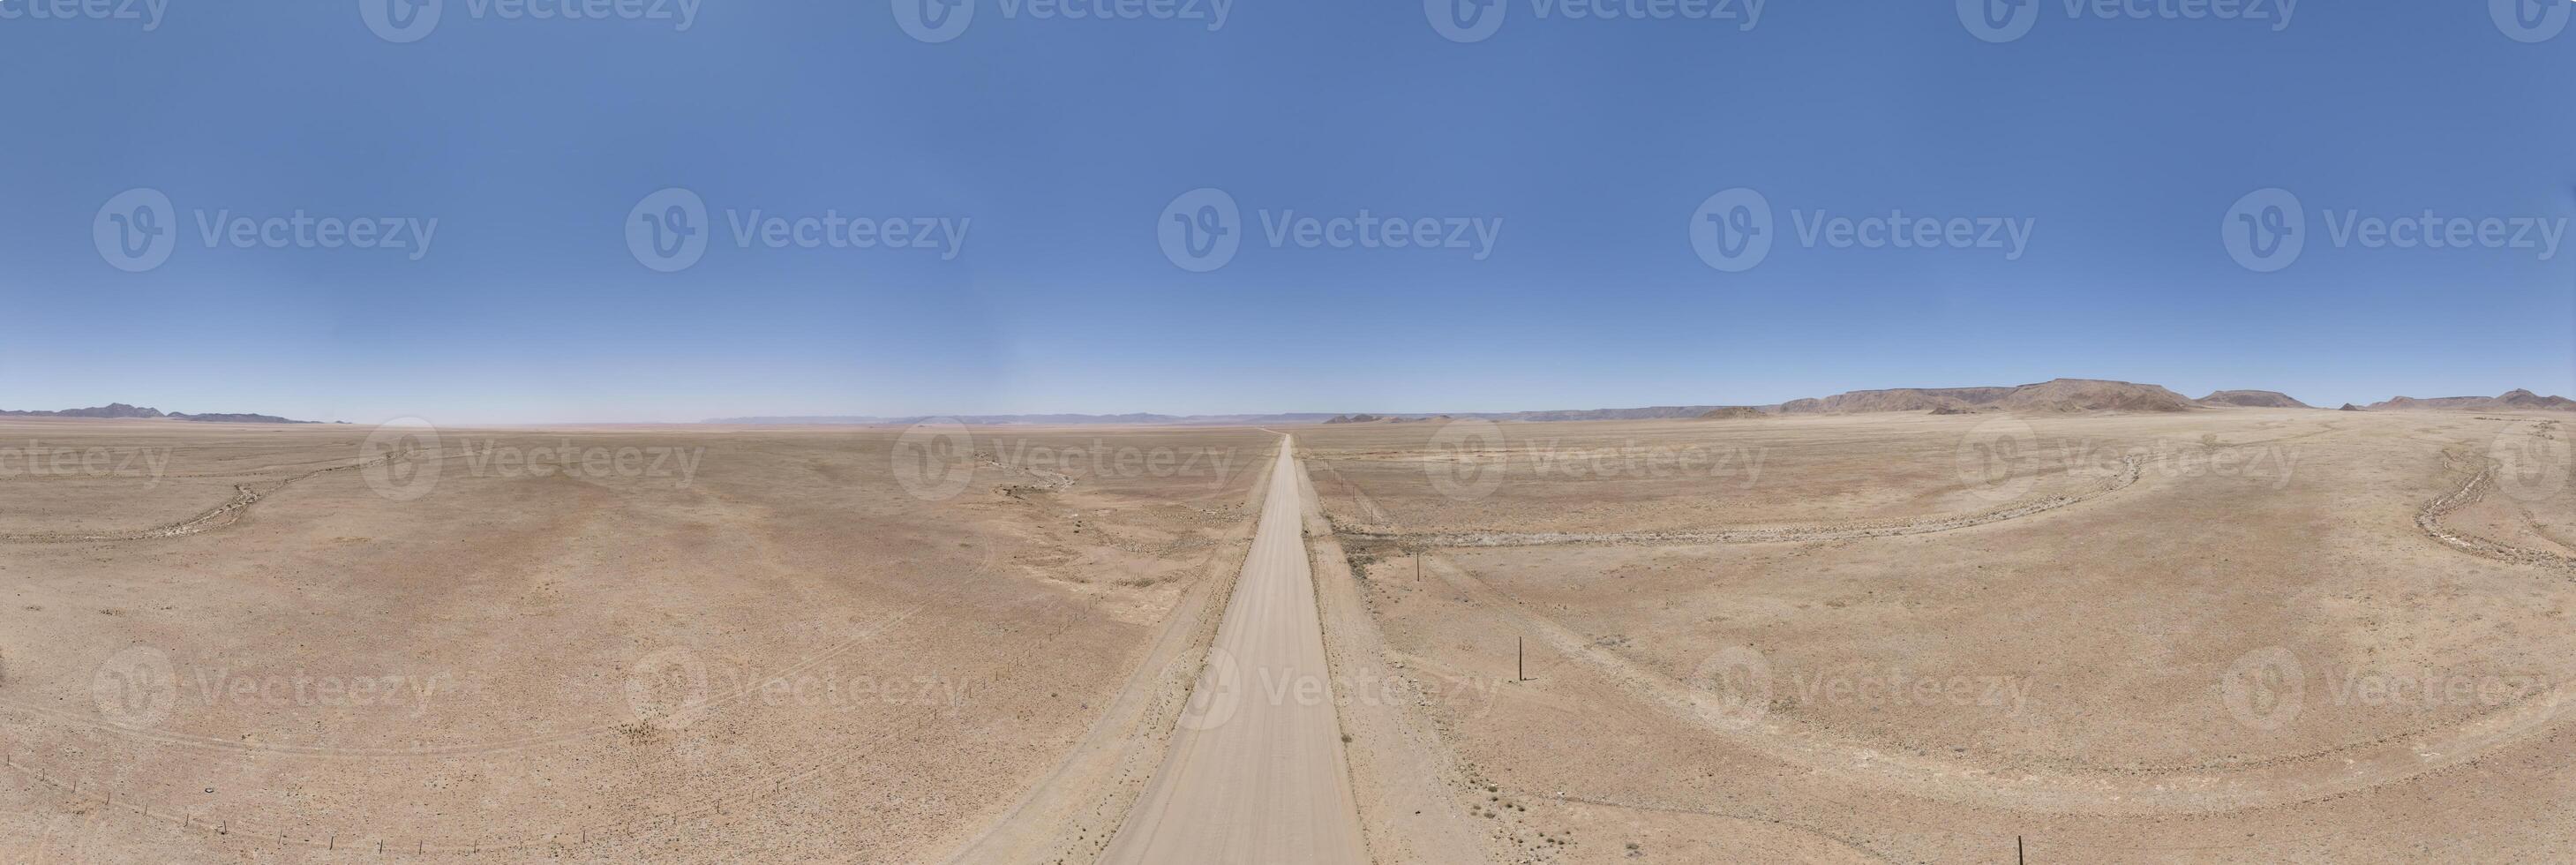 panorámico zumbido imagen de un solitario grava la carretera mediante el Desierto foto